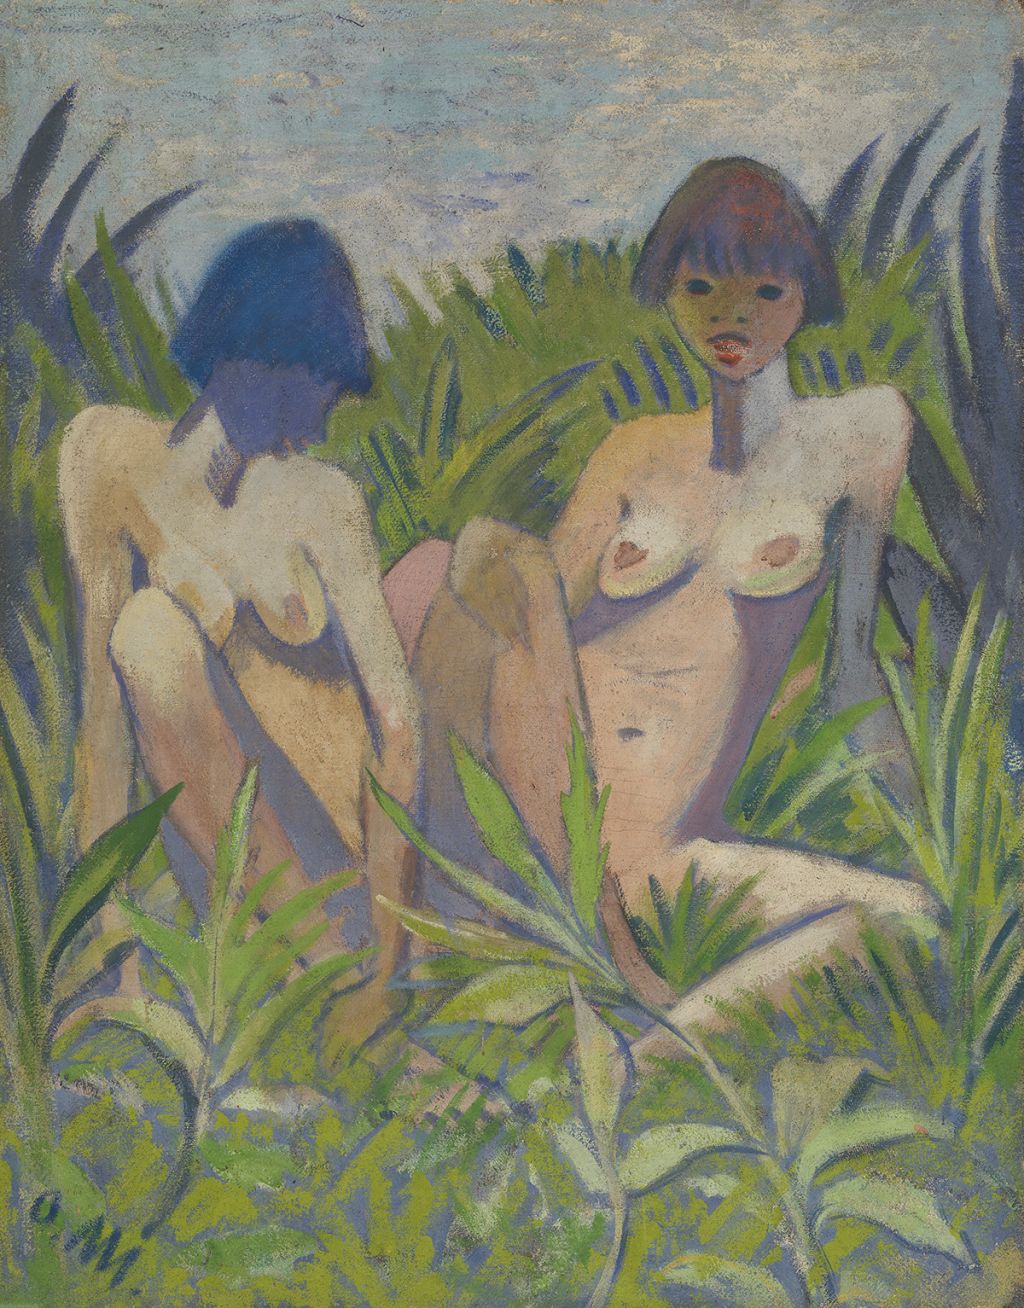 Abbildung: Otto Mueller, Zwei Akte im Gras, um 1924, Leimfarbe auf Rupfen, Buchheim Museum